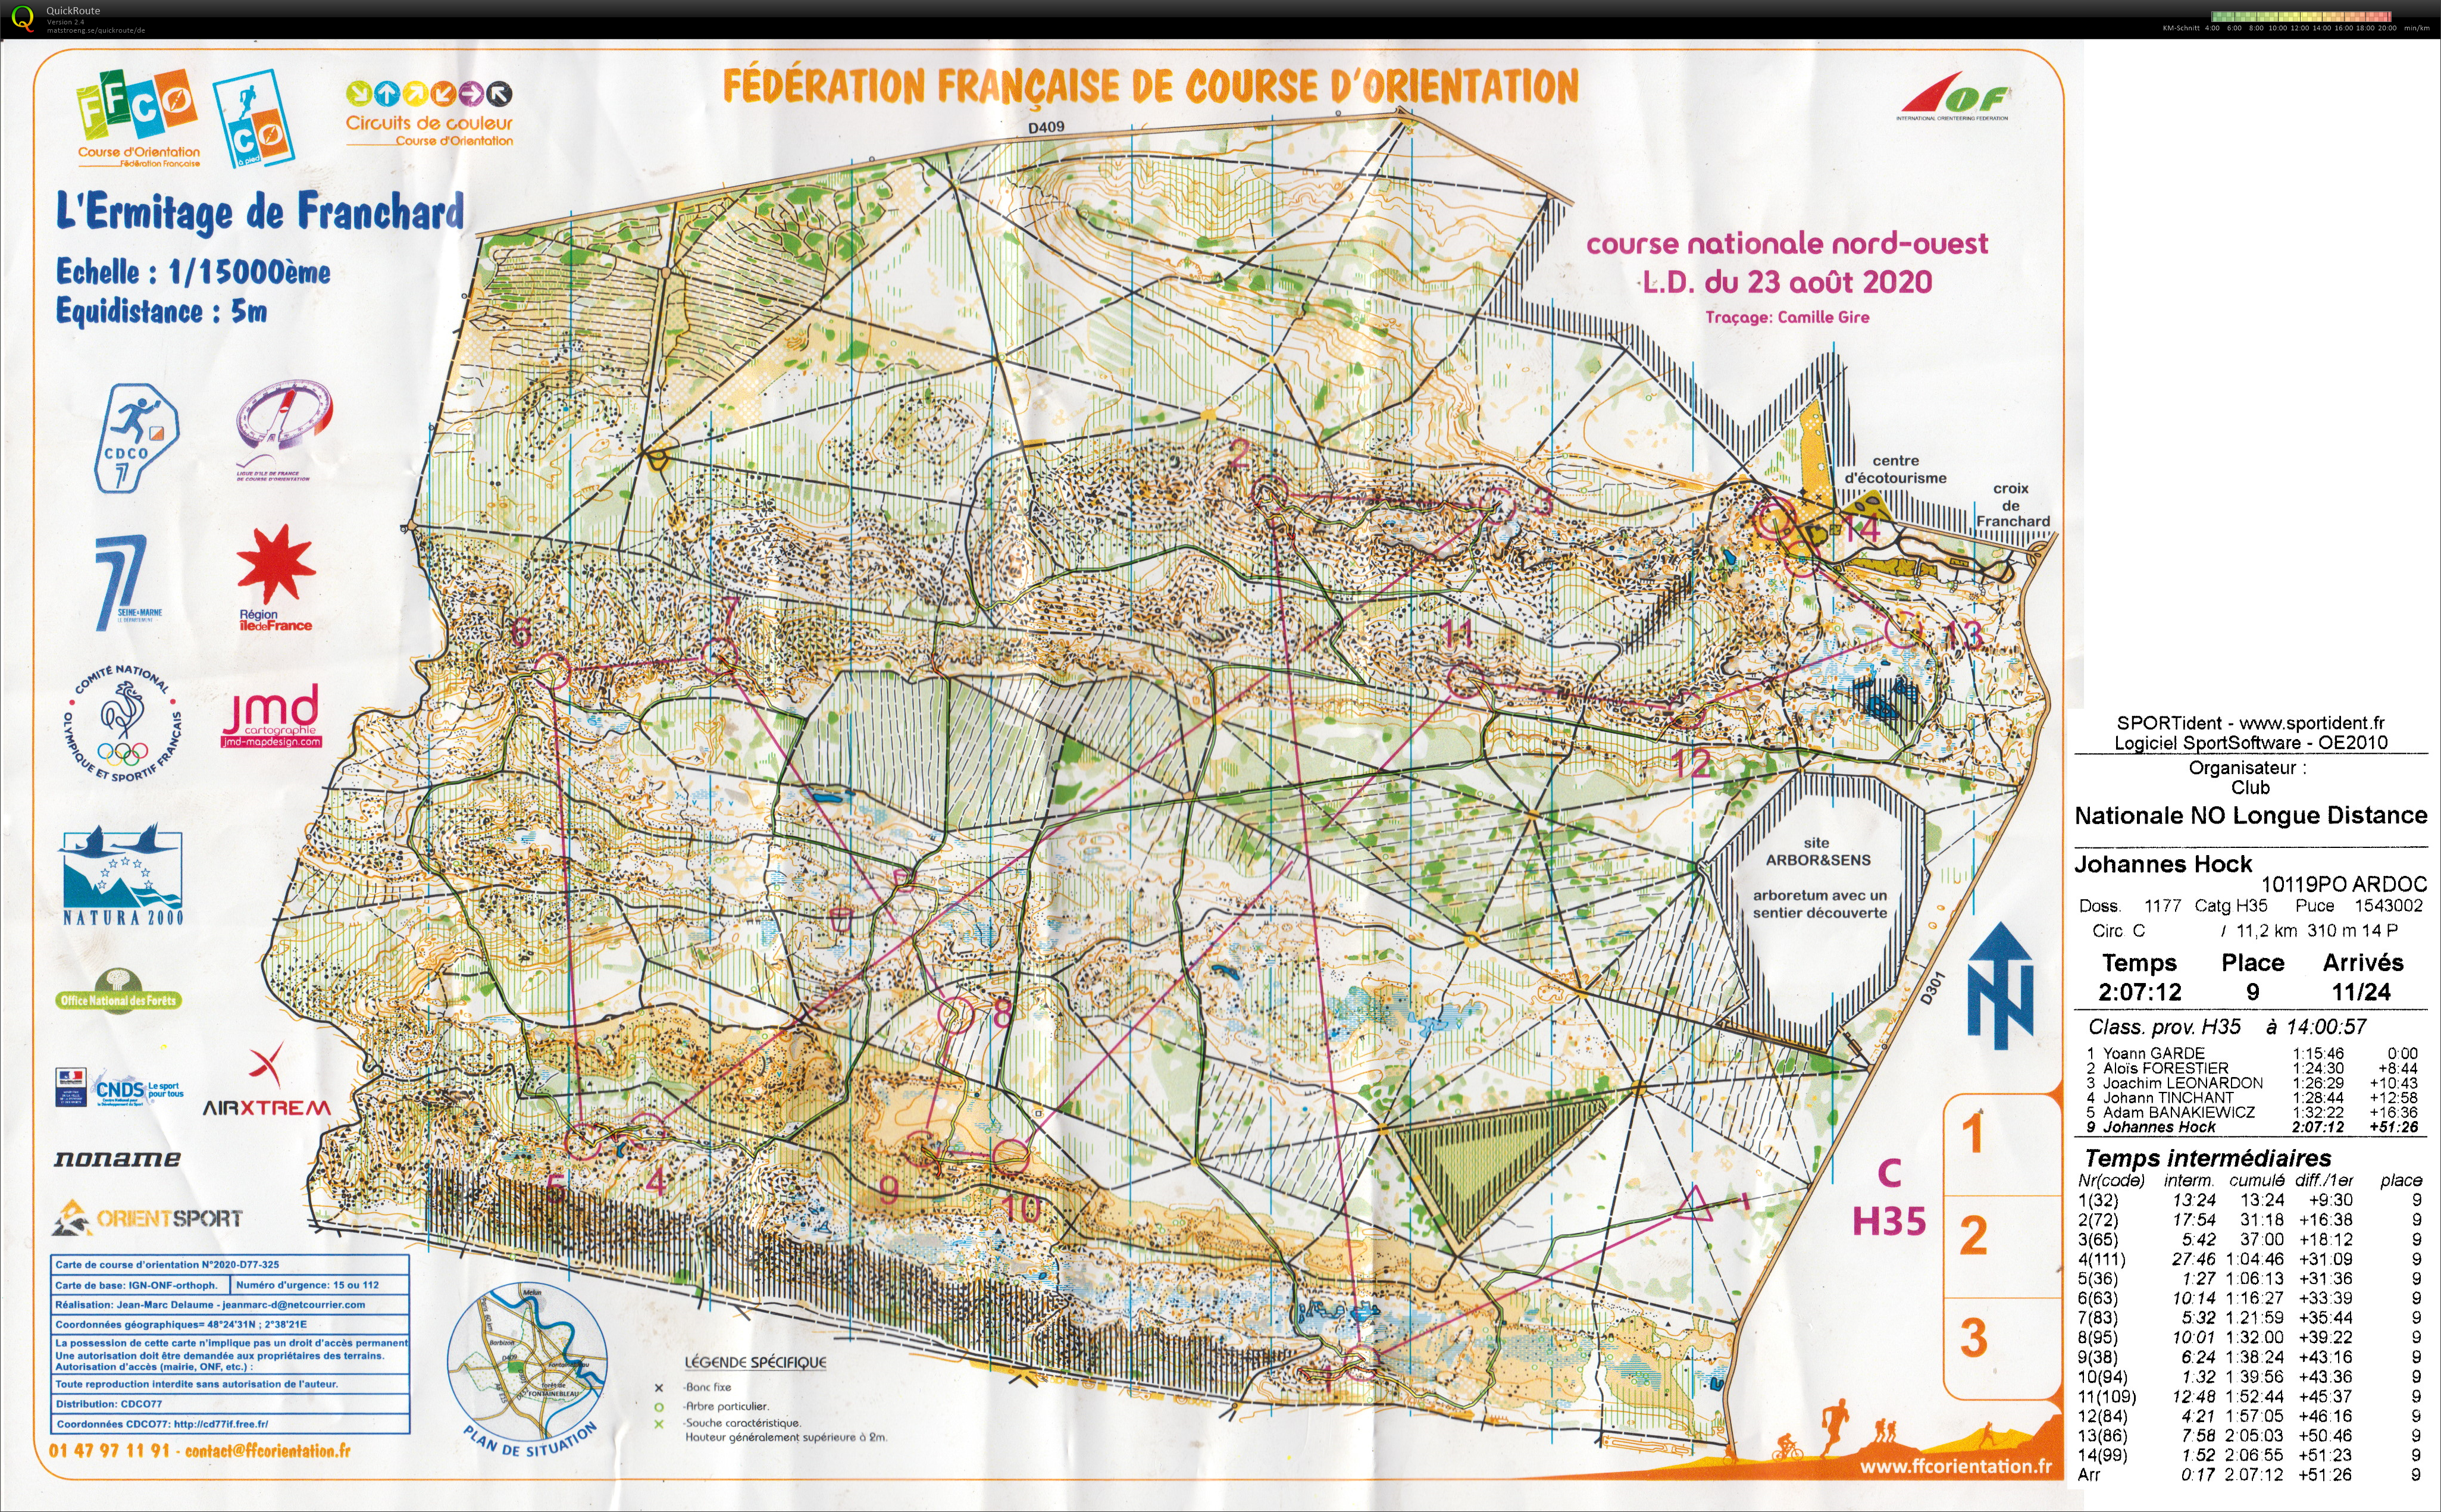 Course nationale L.D. Fontainebleau (23-08-2020)